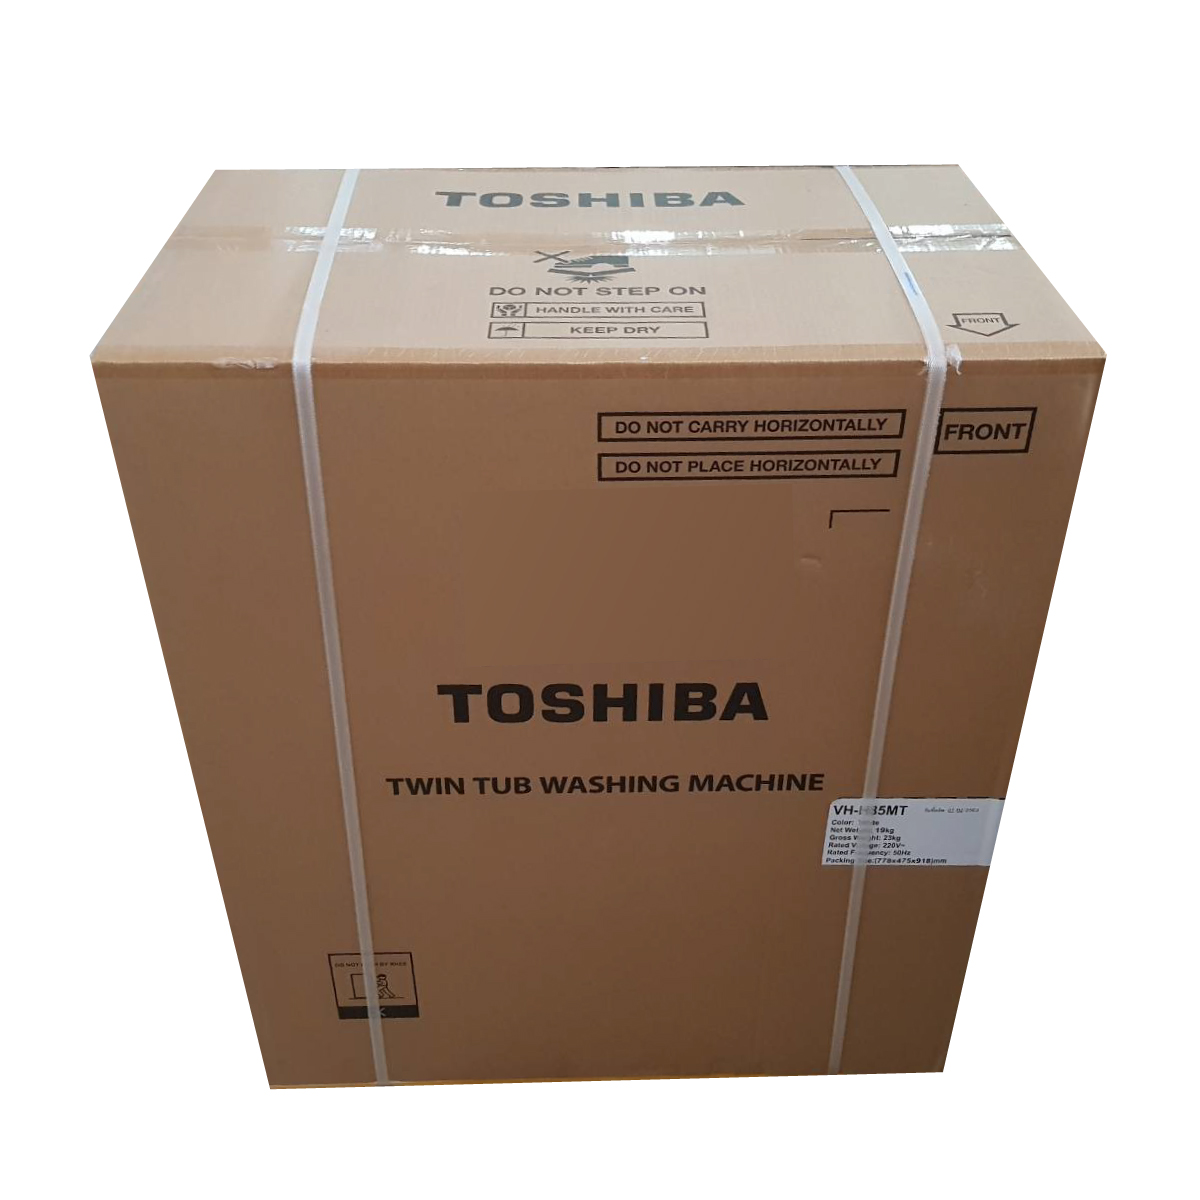 เครื่องซักผ้าสองถัง TOSHIBA รุ่น VH-H85MT ขนาด 7.5 kg. ประกันสินค้า 2 ปี มอเตอร์ 5 ปี